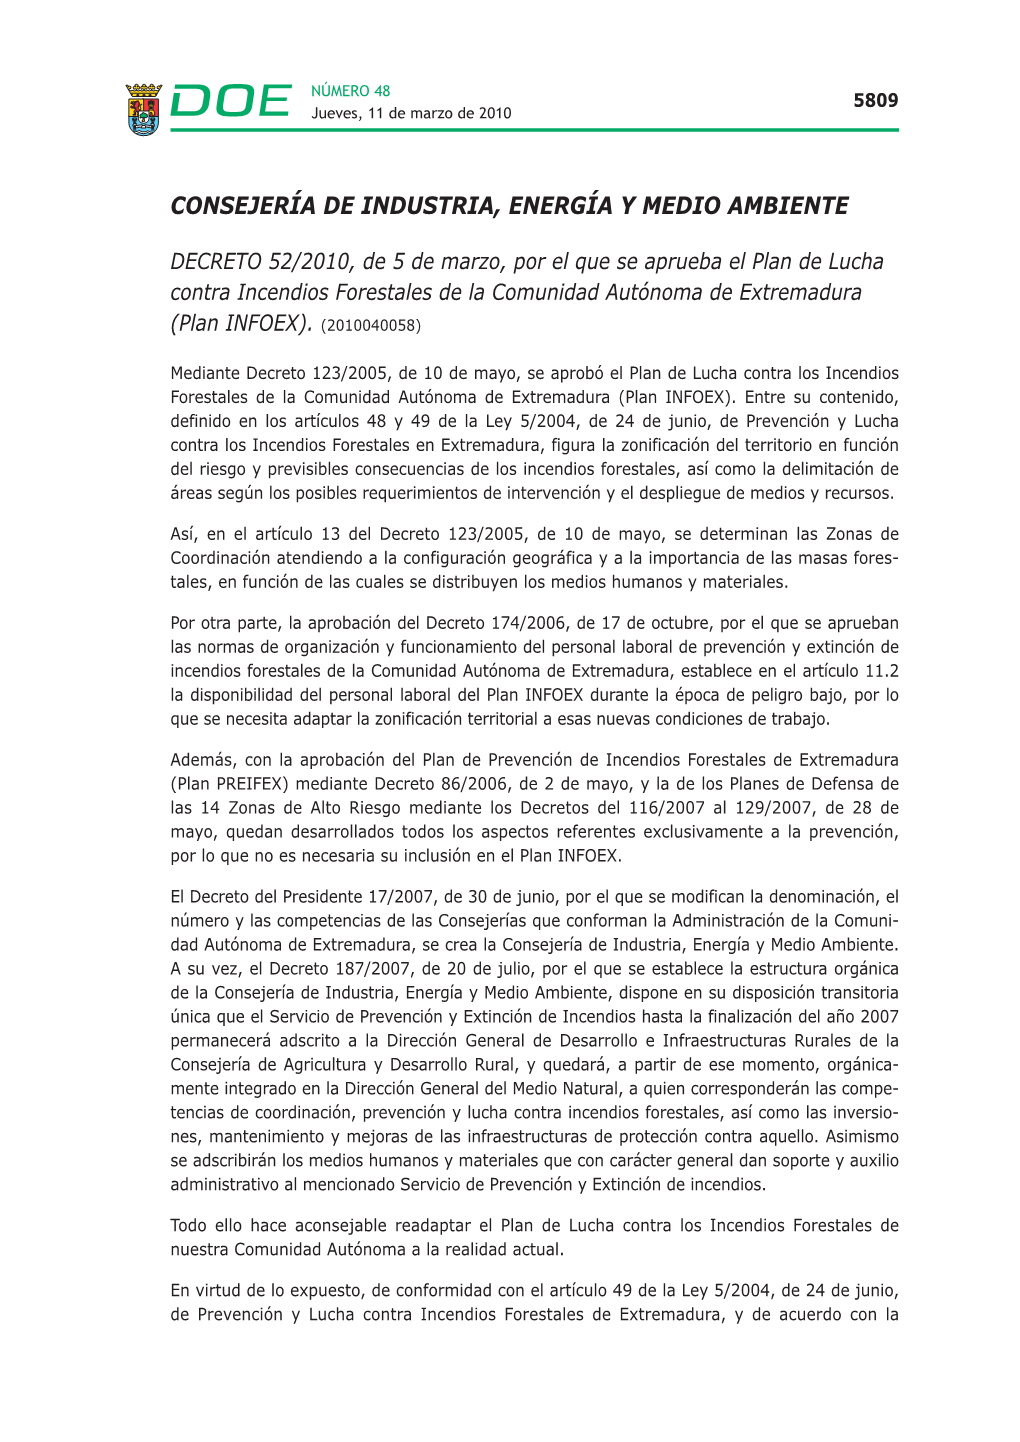 DECRETO 52/2010, De 5 De Marzo, Por El Que Se Aprueba El Plan De Lucha Contra Incendios Forestales De La Comunidad Autónoma De Extremadura (Plan INFOEX)